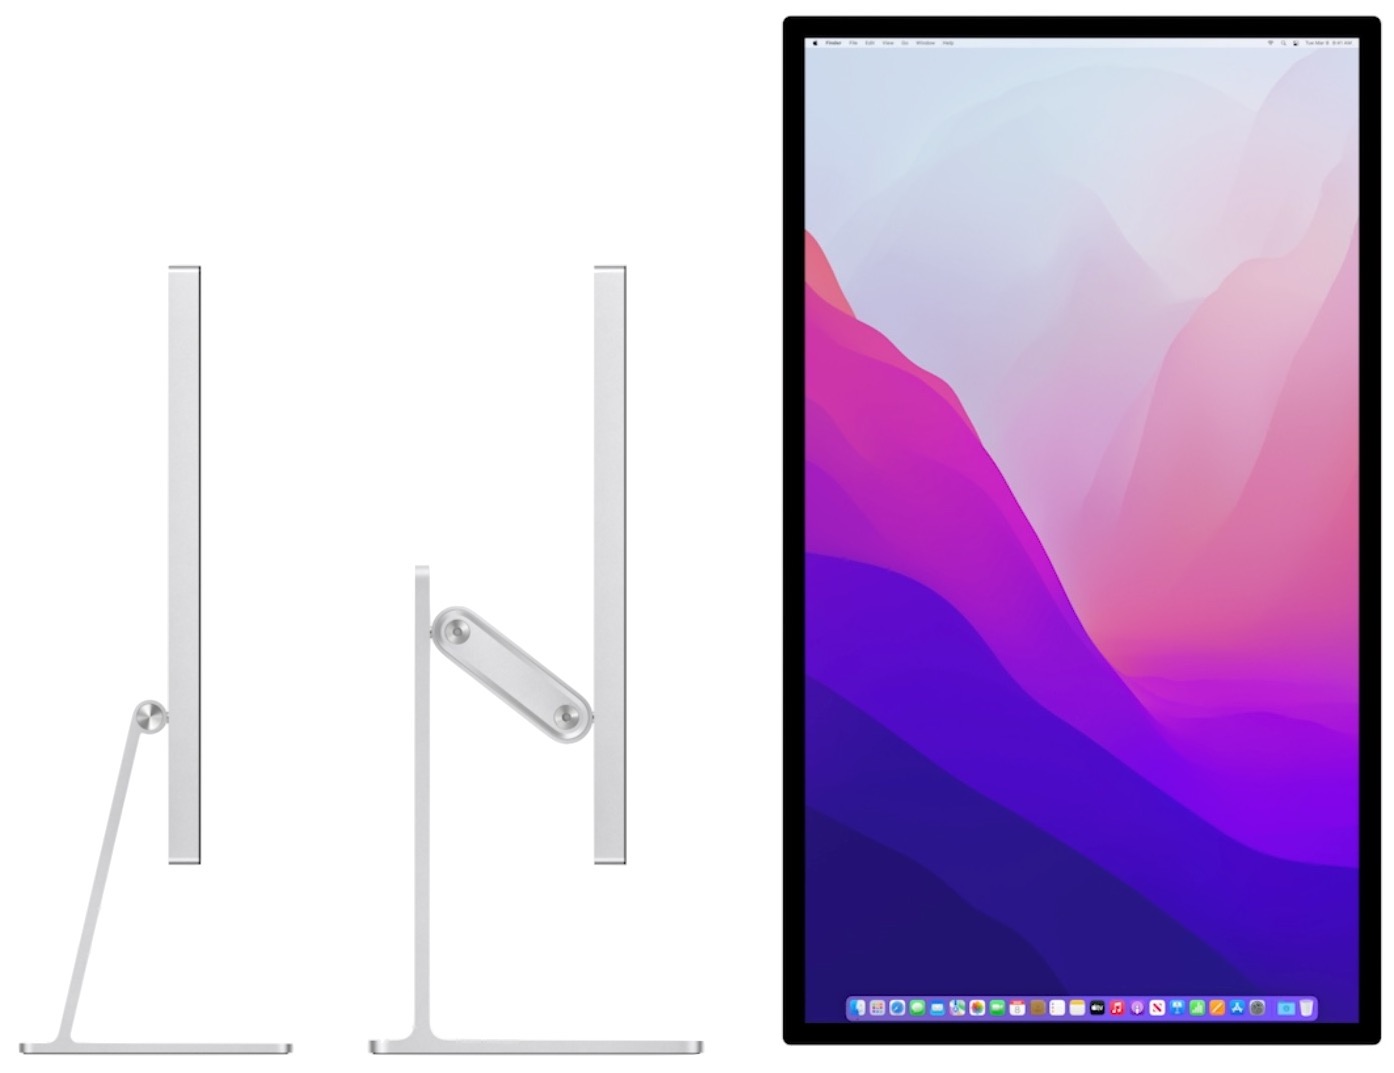 Studio Mac New Buying - Calculus Display Change and TidBITS Mac Studio